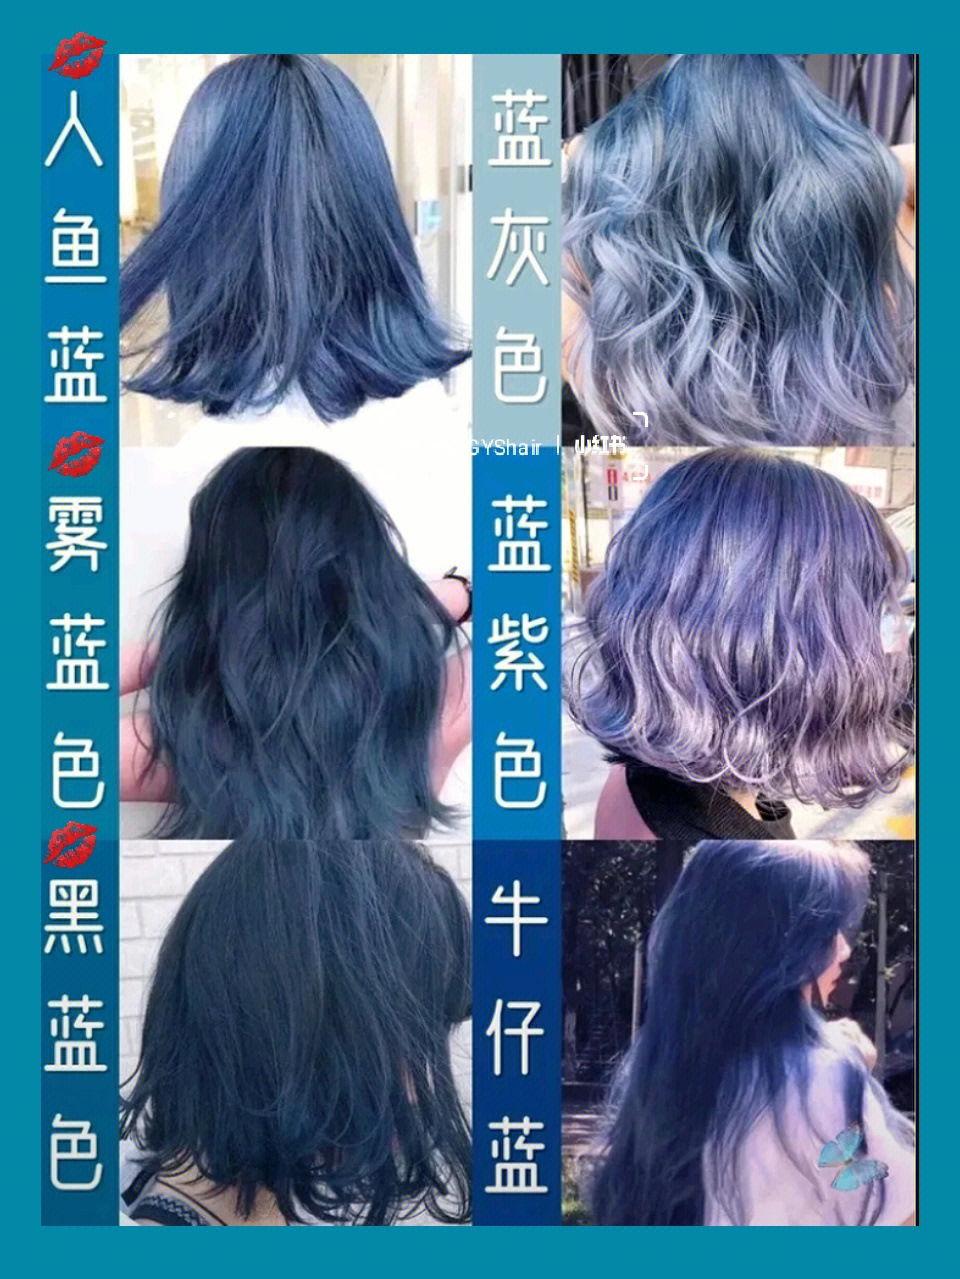 北京网红店马上是甜蜜蜜的夏天了,是时候染头发了蓝色系发色梦幻朦胧